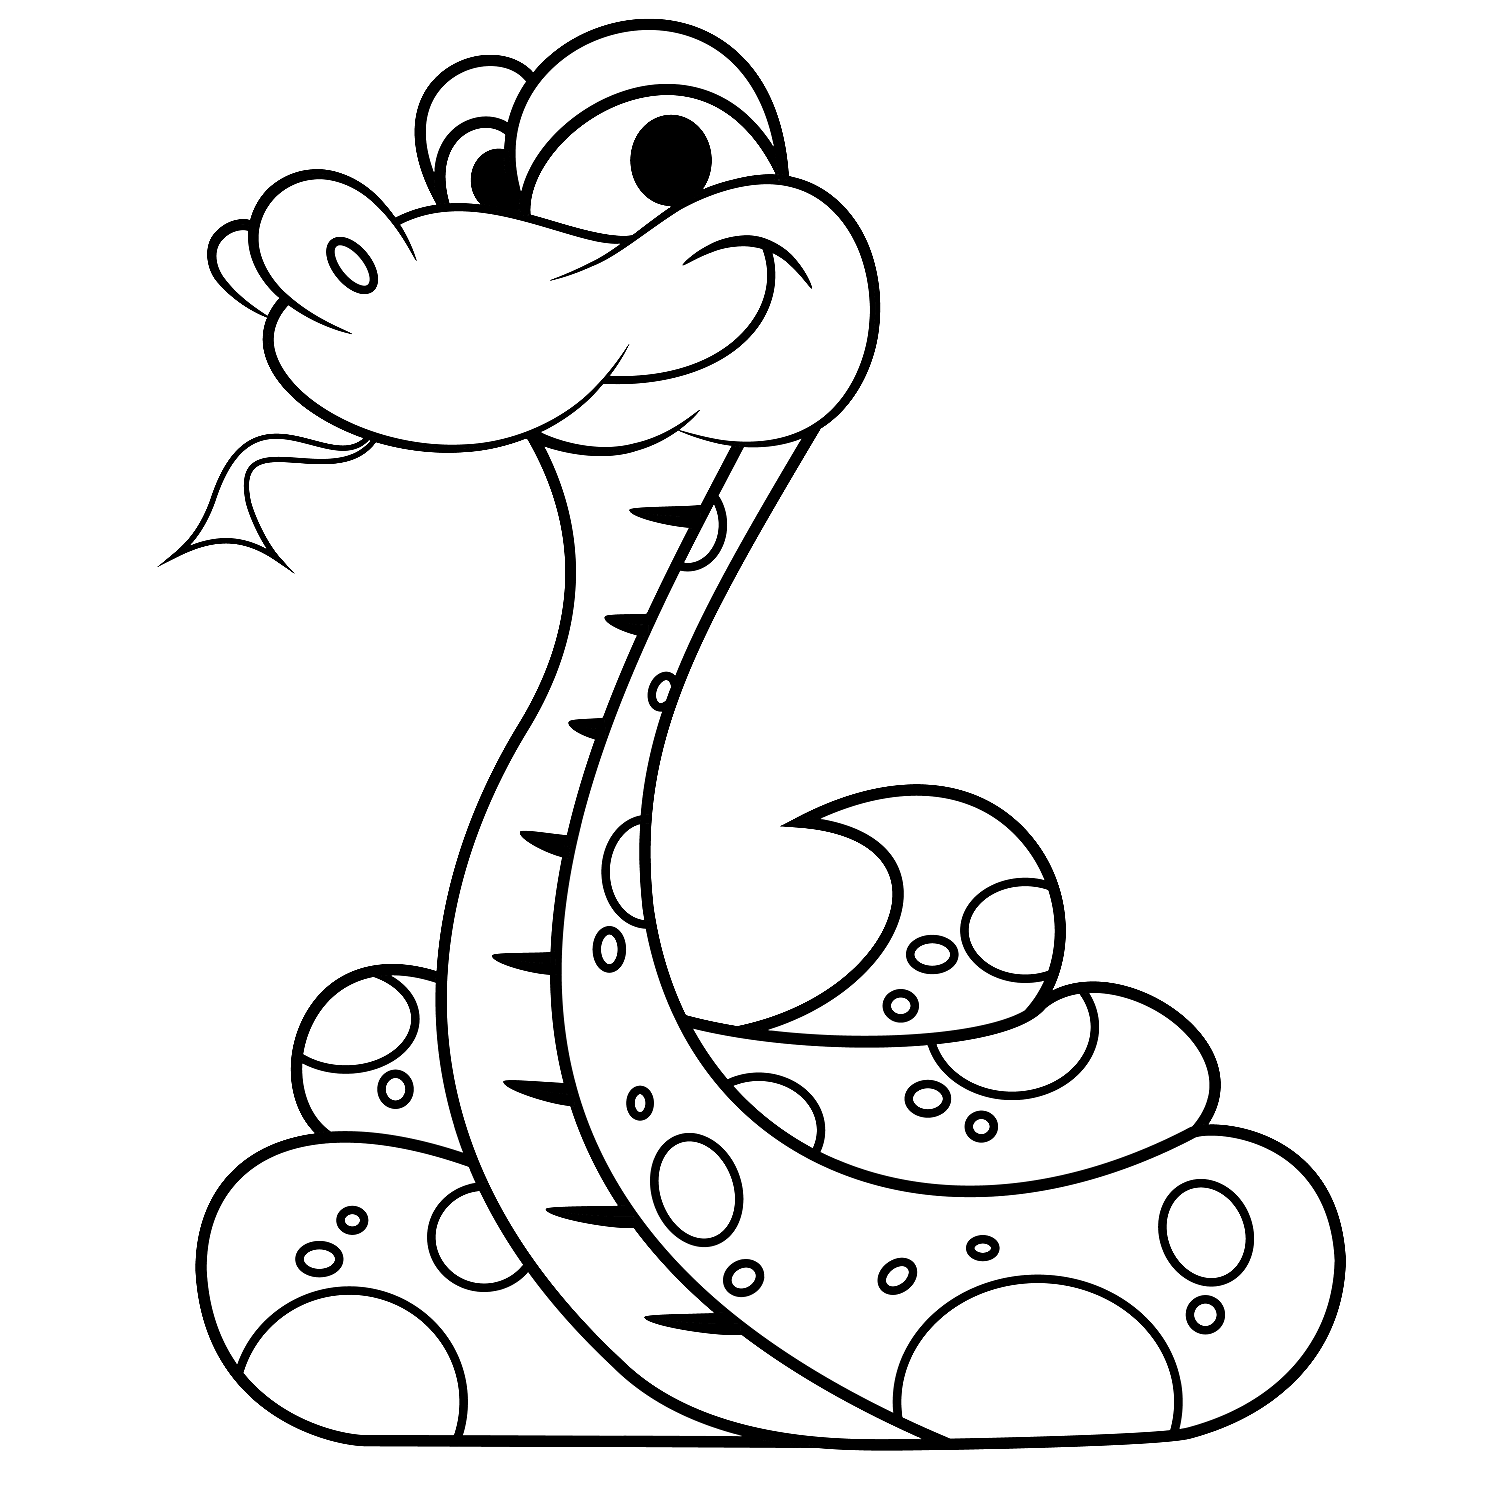 snake coloring sheet free printable snake coloring pages for kids coloring sheet snake 